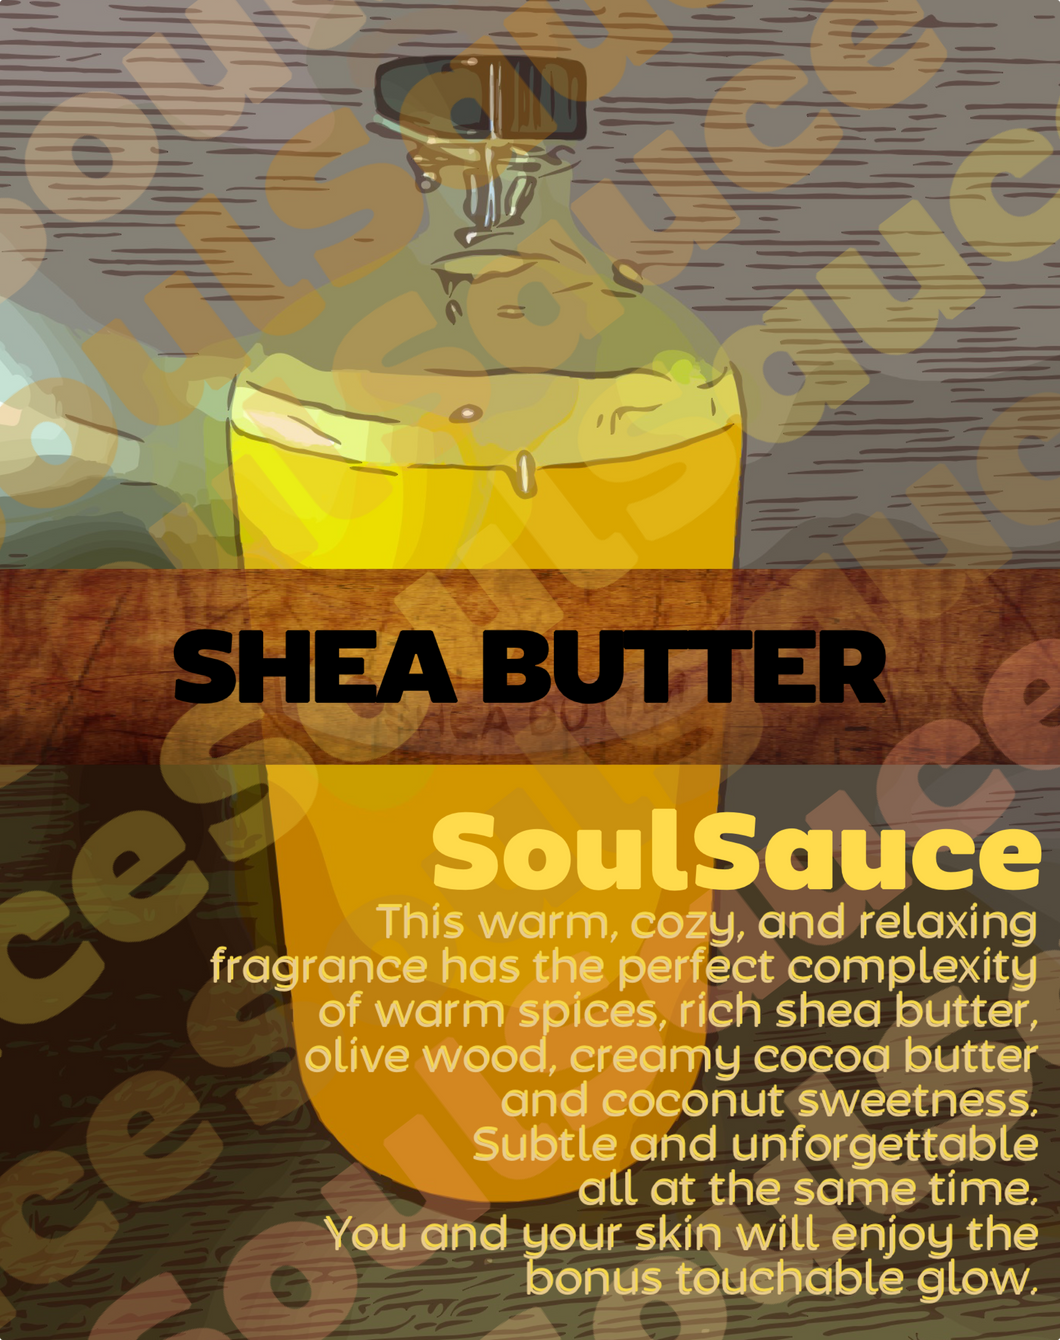 Shea Butter Perfumed Body Oil by SoulSauce - Buy 4, Get 5